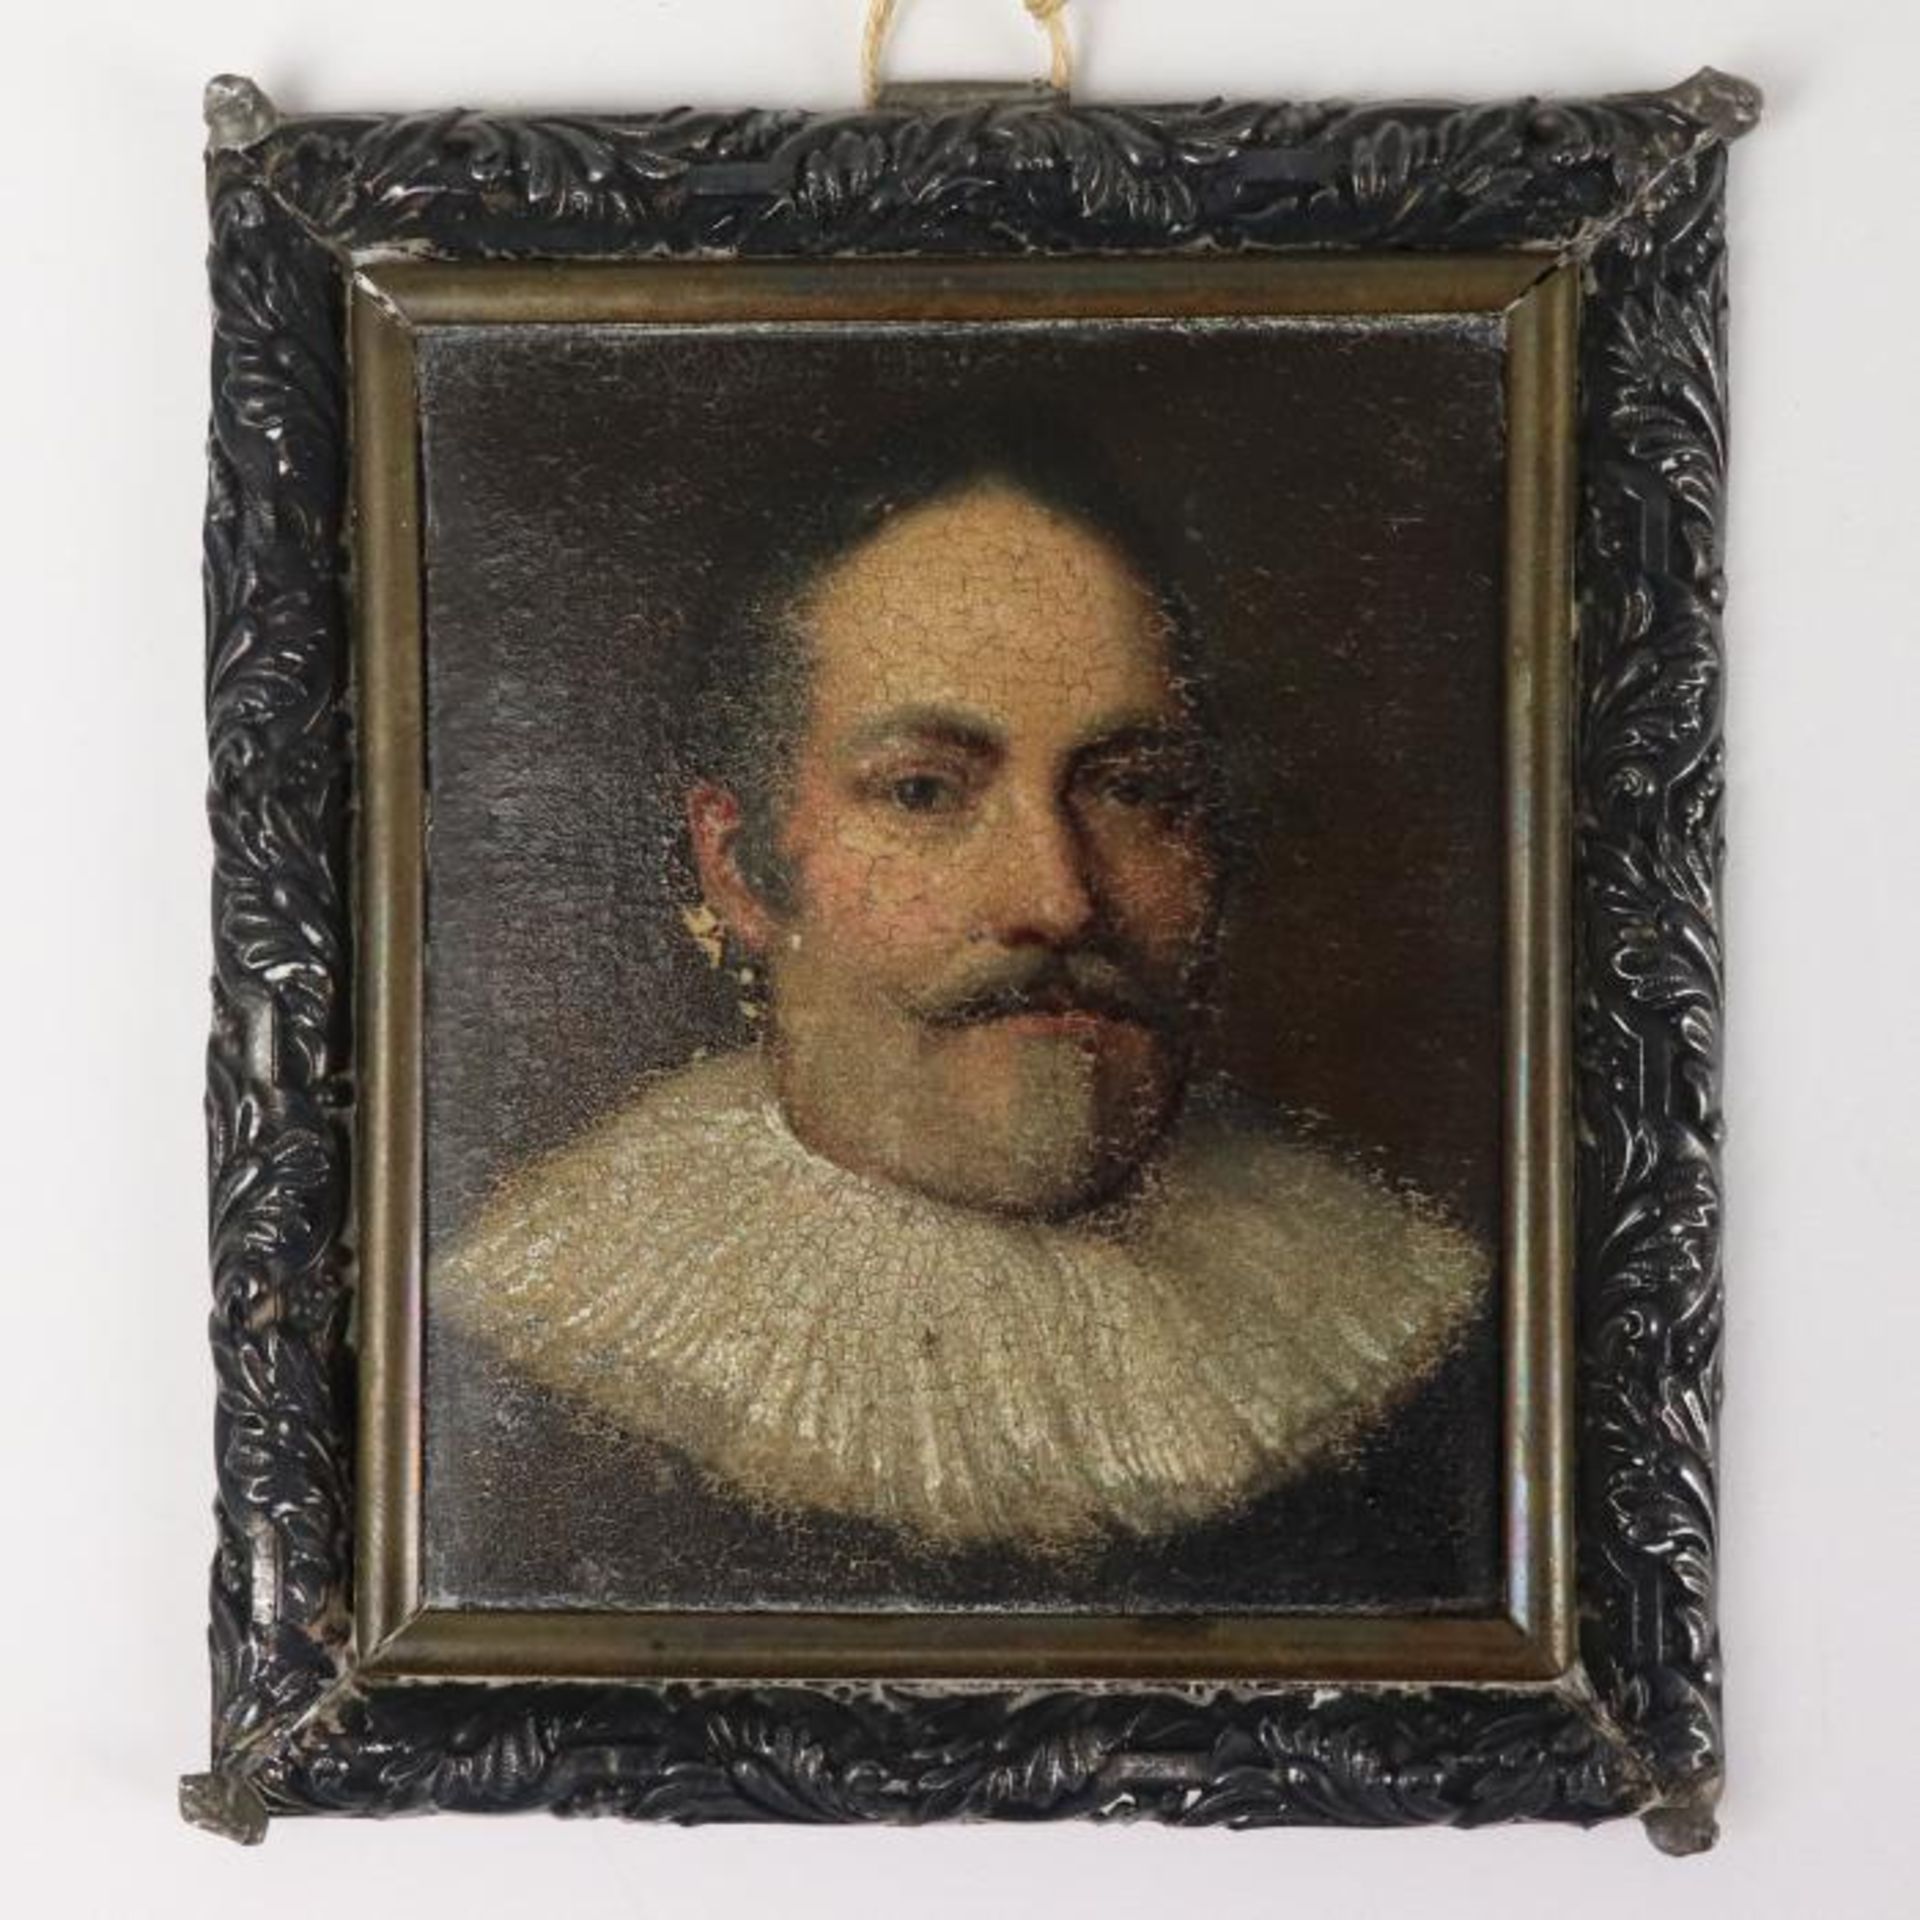 Miniatur18.Jh., Metall, Öl, Brustporträt eines Herren mit weißer Halskrause, wohl Pastor,